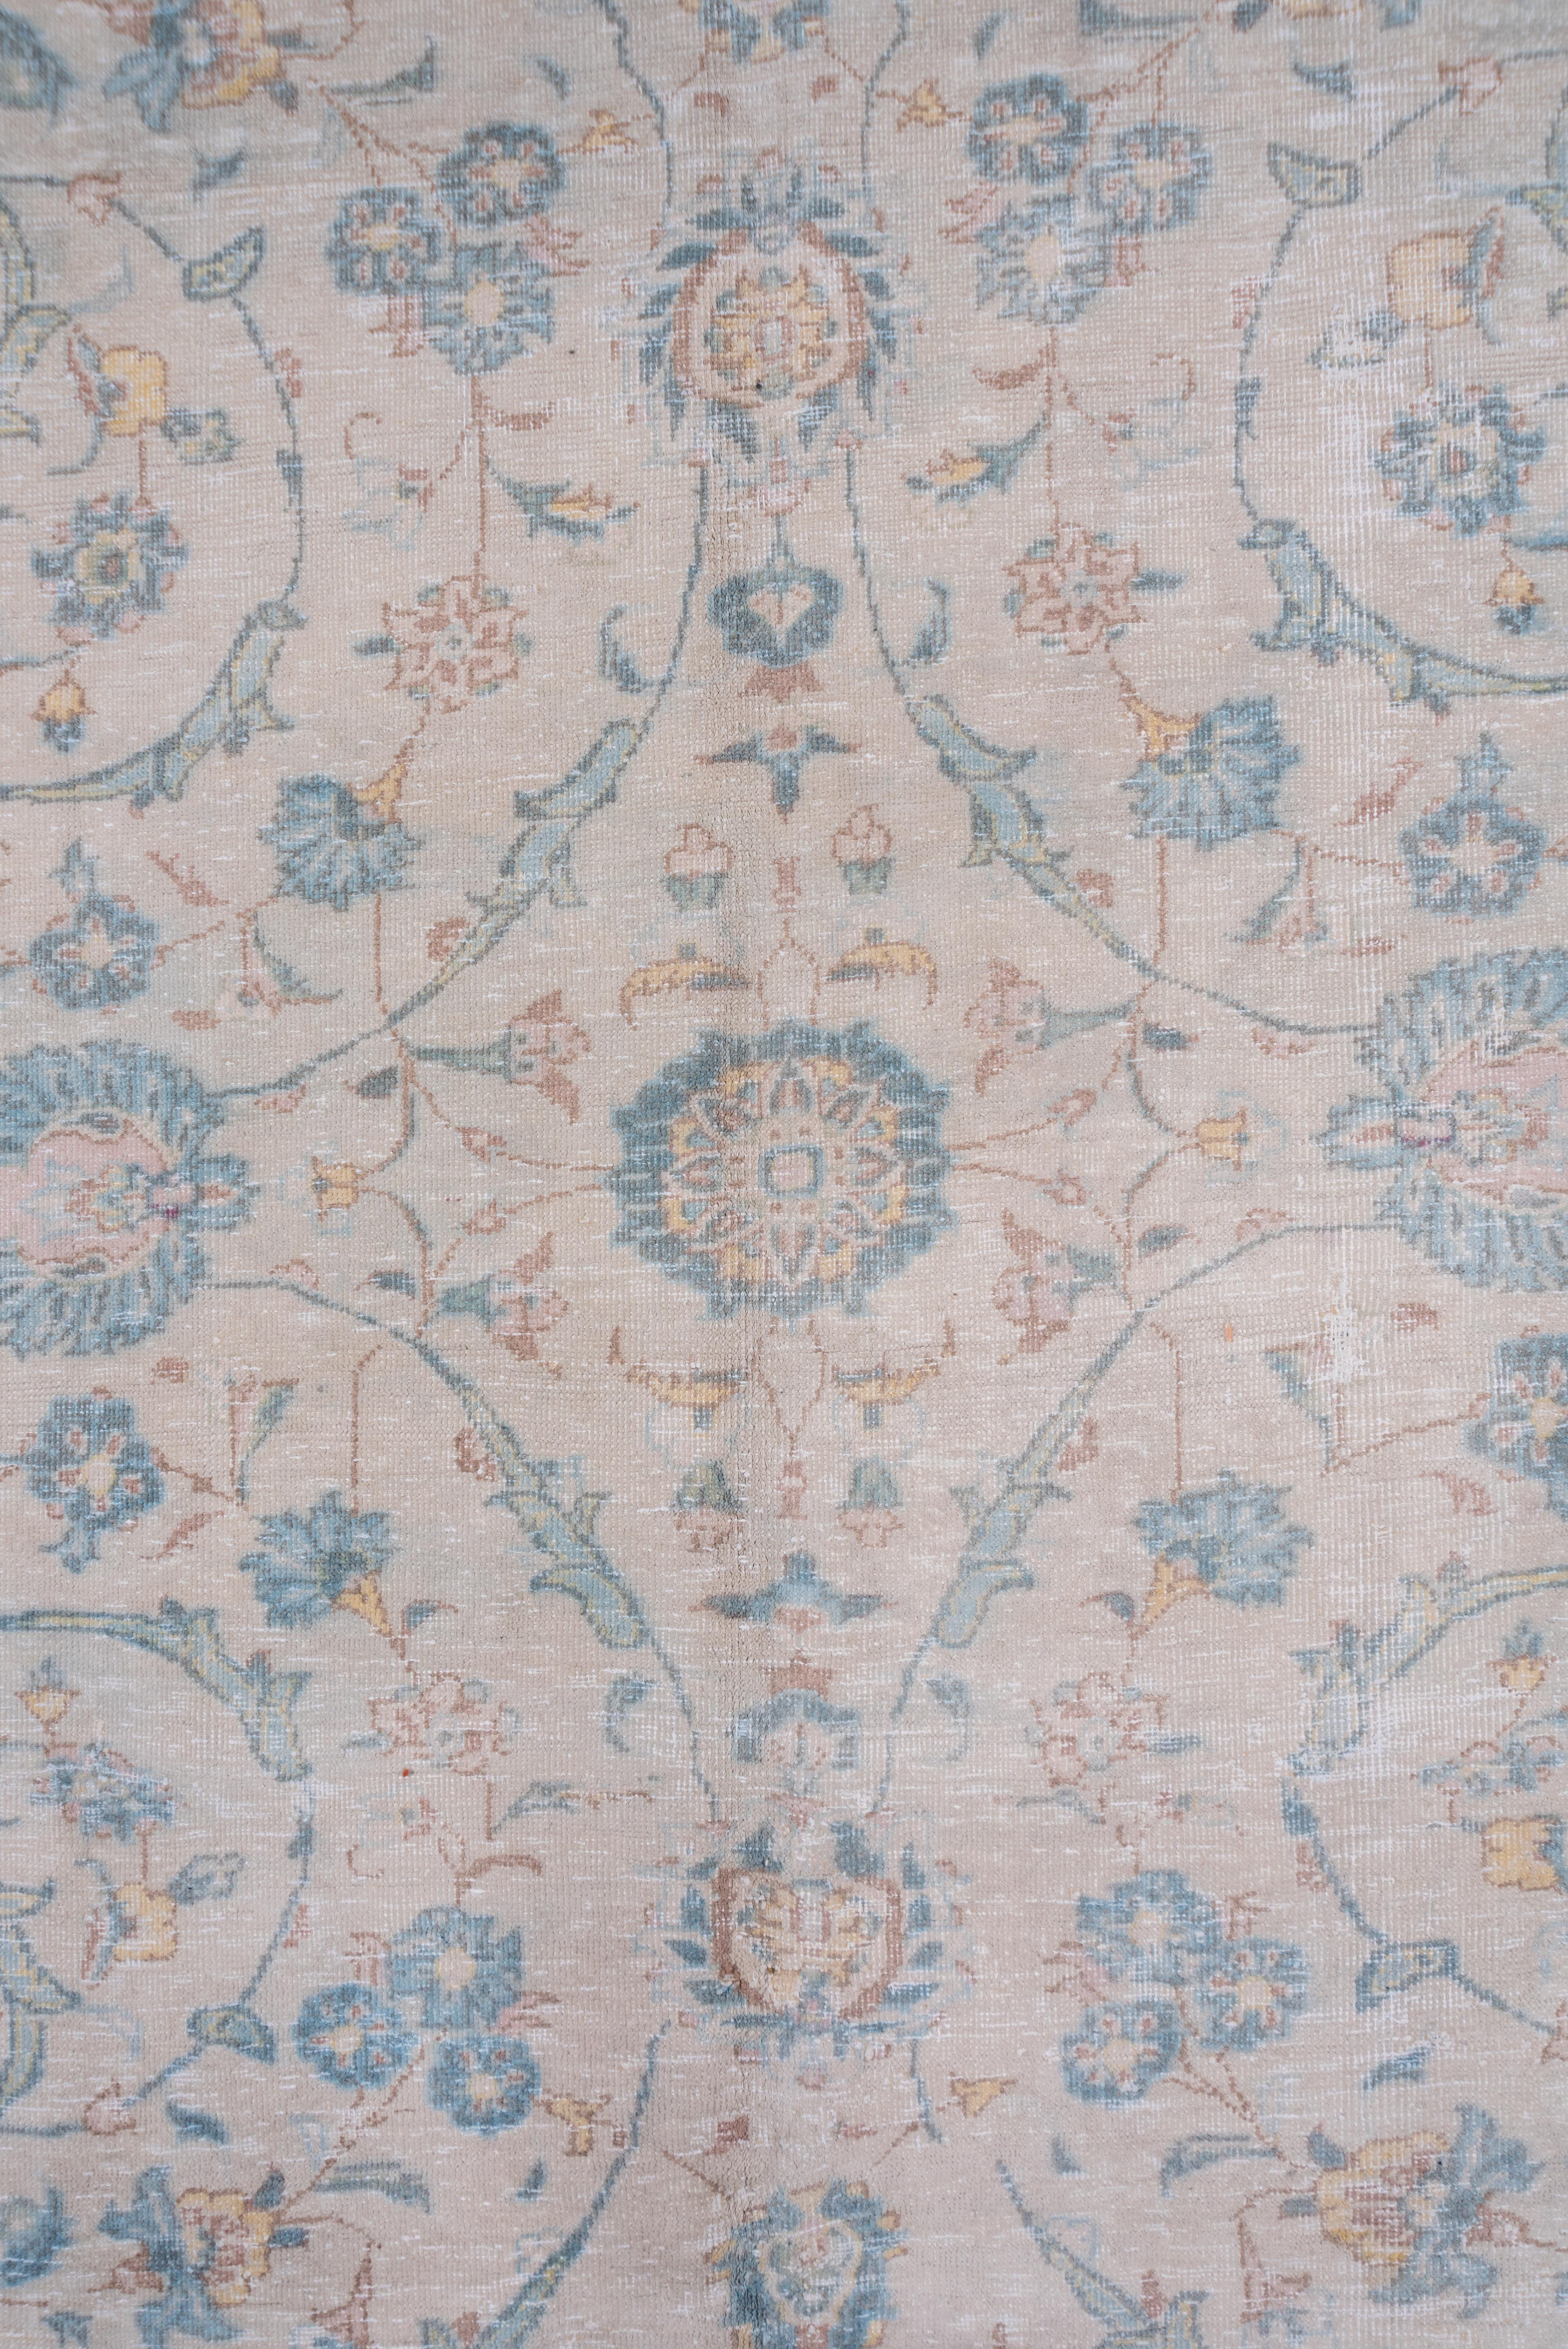 Persian Soft Palette Antique Tabriz Carpet For Sale